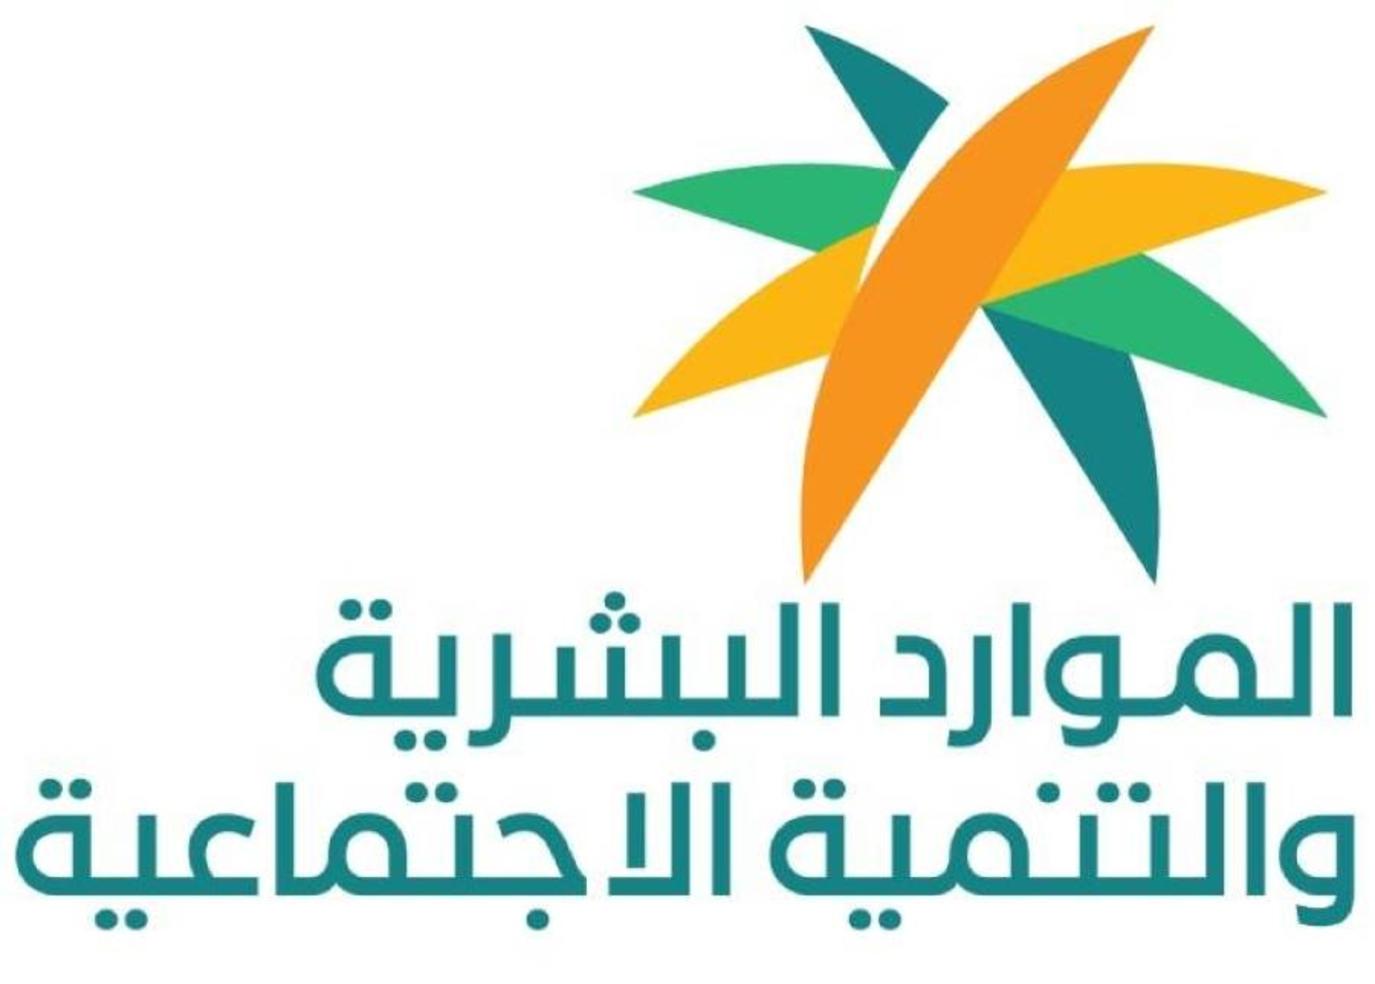 الضمان الاجتماعي:- رابط المساعدة المقطوعة الرسمي من وزارة الموارد البشرية والتنمية الاجتماعية السعودية